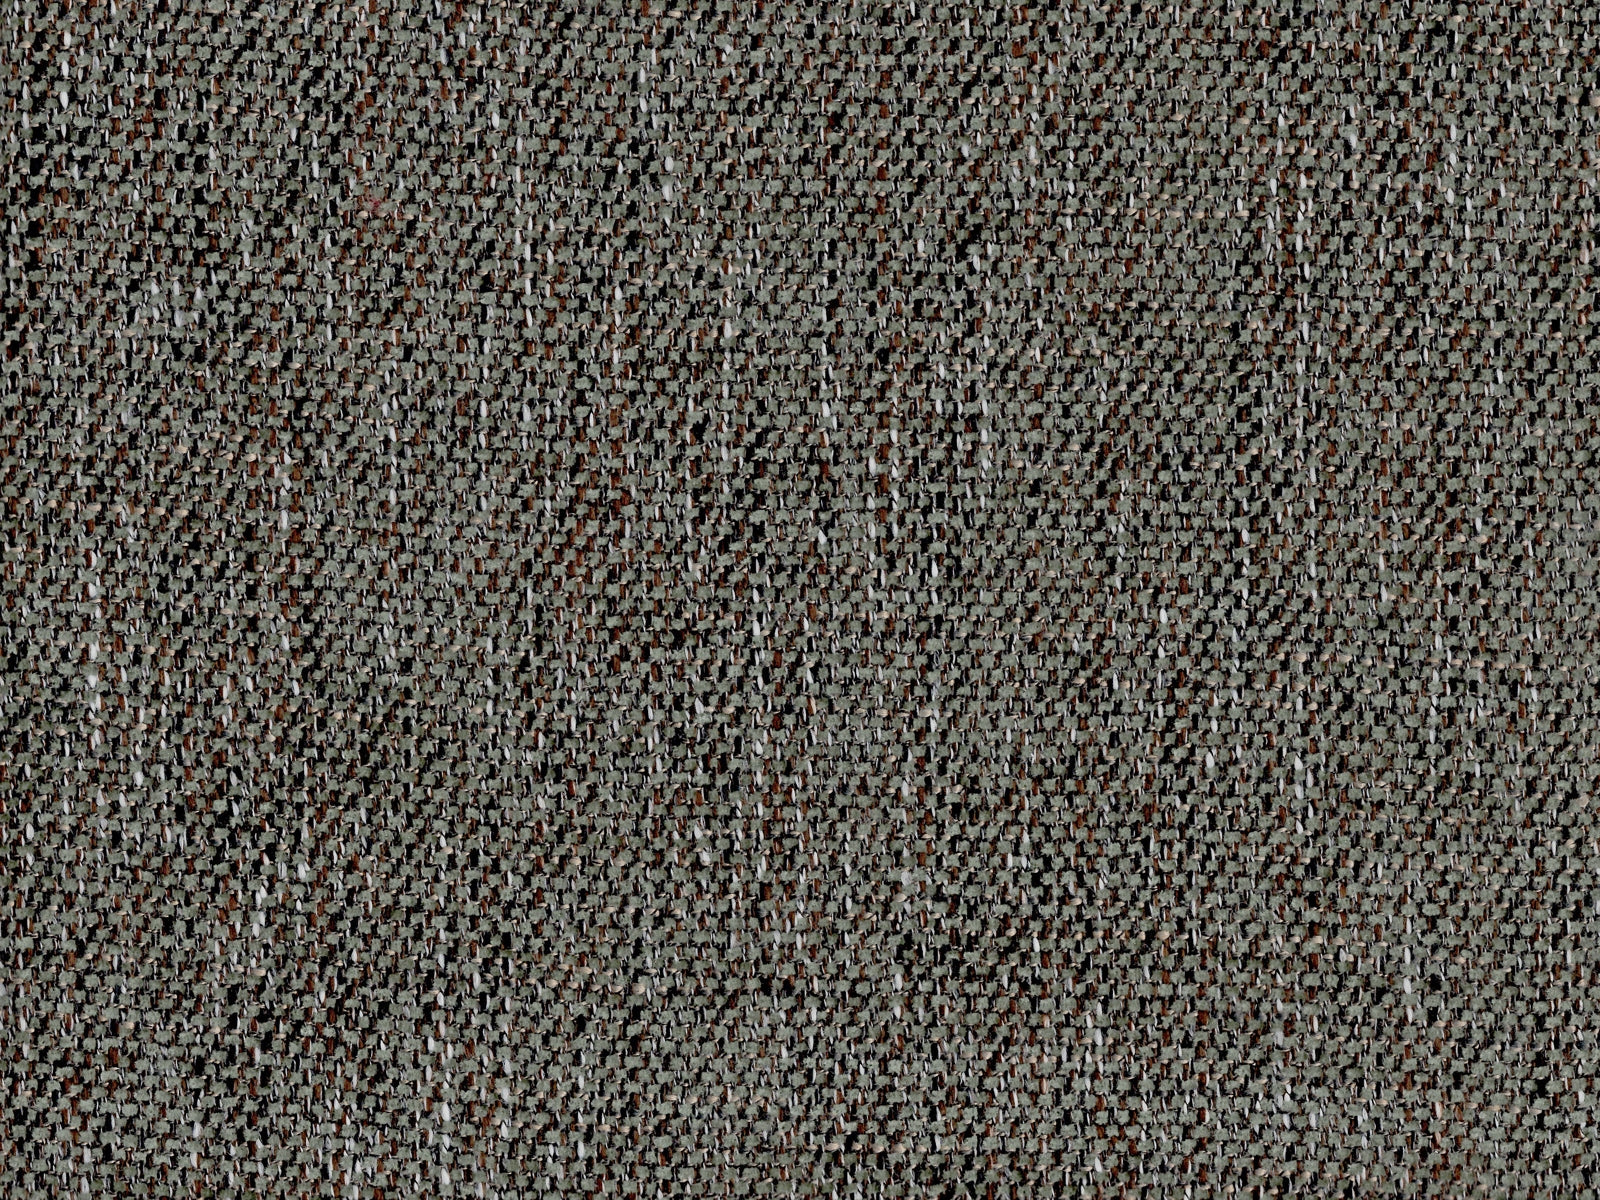 Ferrara Fabric Samples - Rydan Interiors